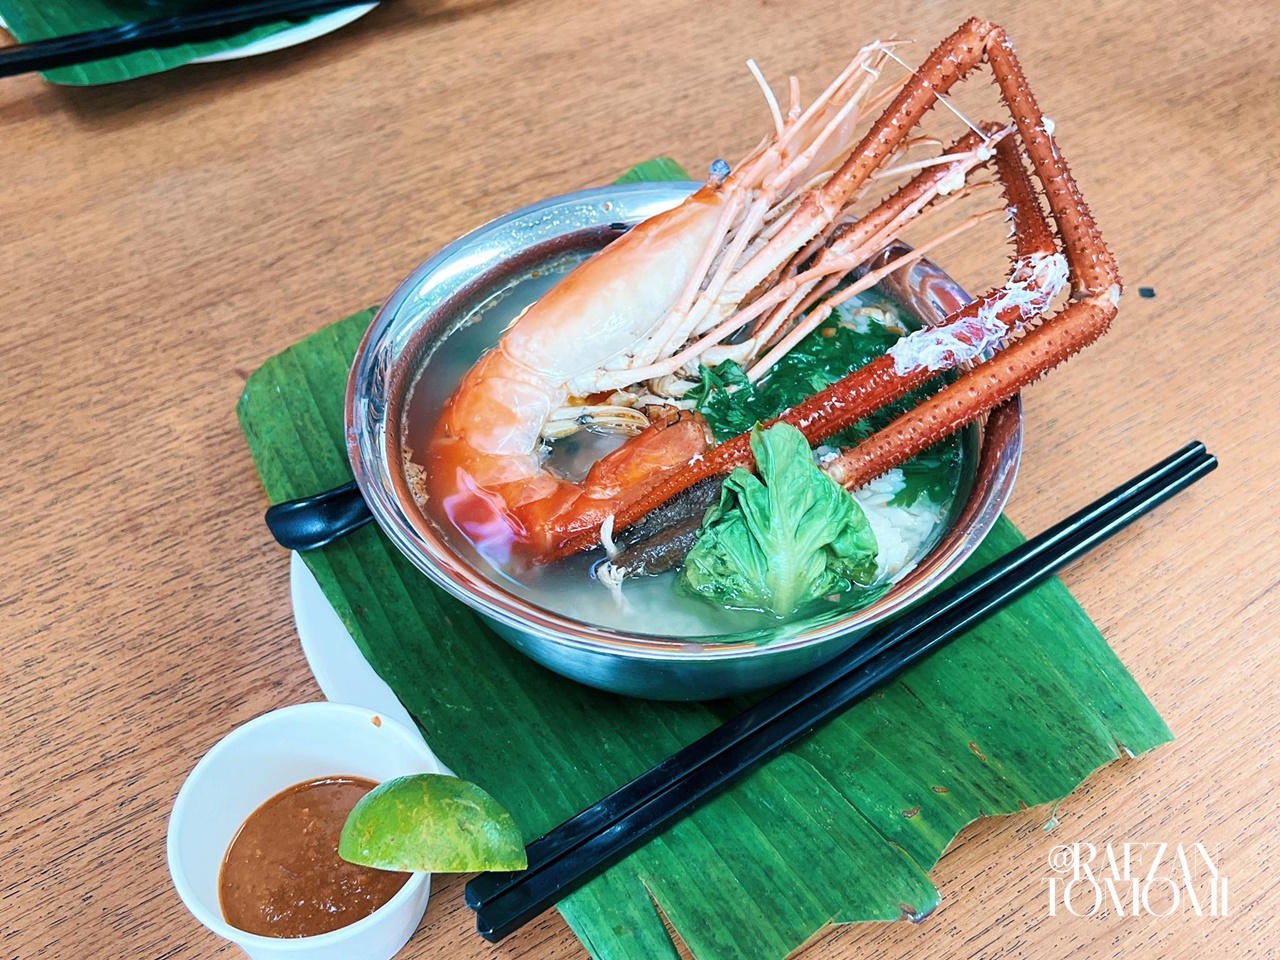 Just Seafood Memperkenalkan Menu Baharu, Famous Thai Style Rice Porridge